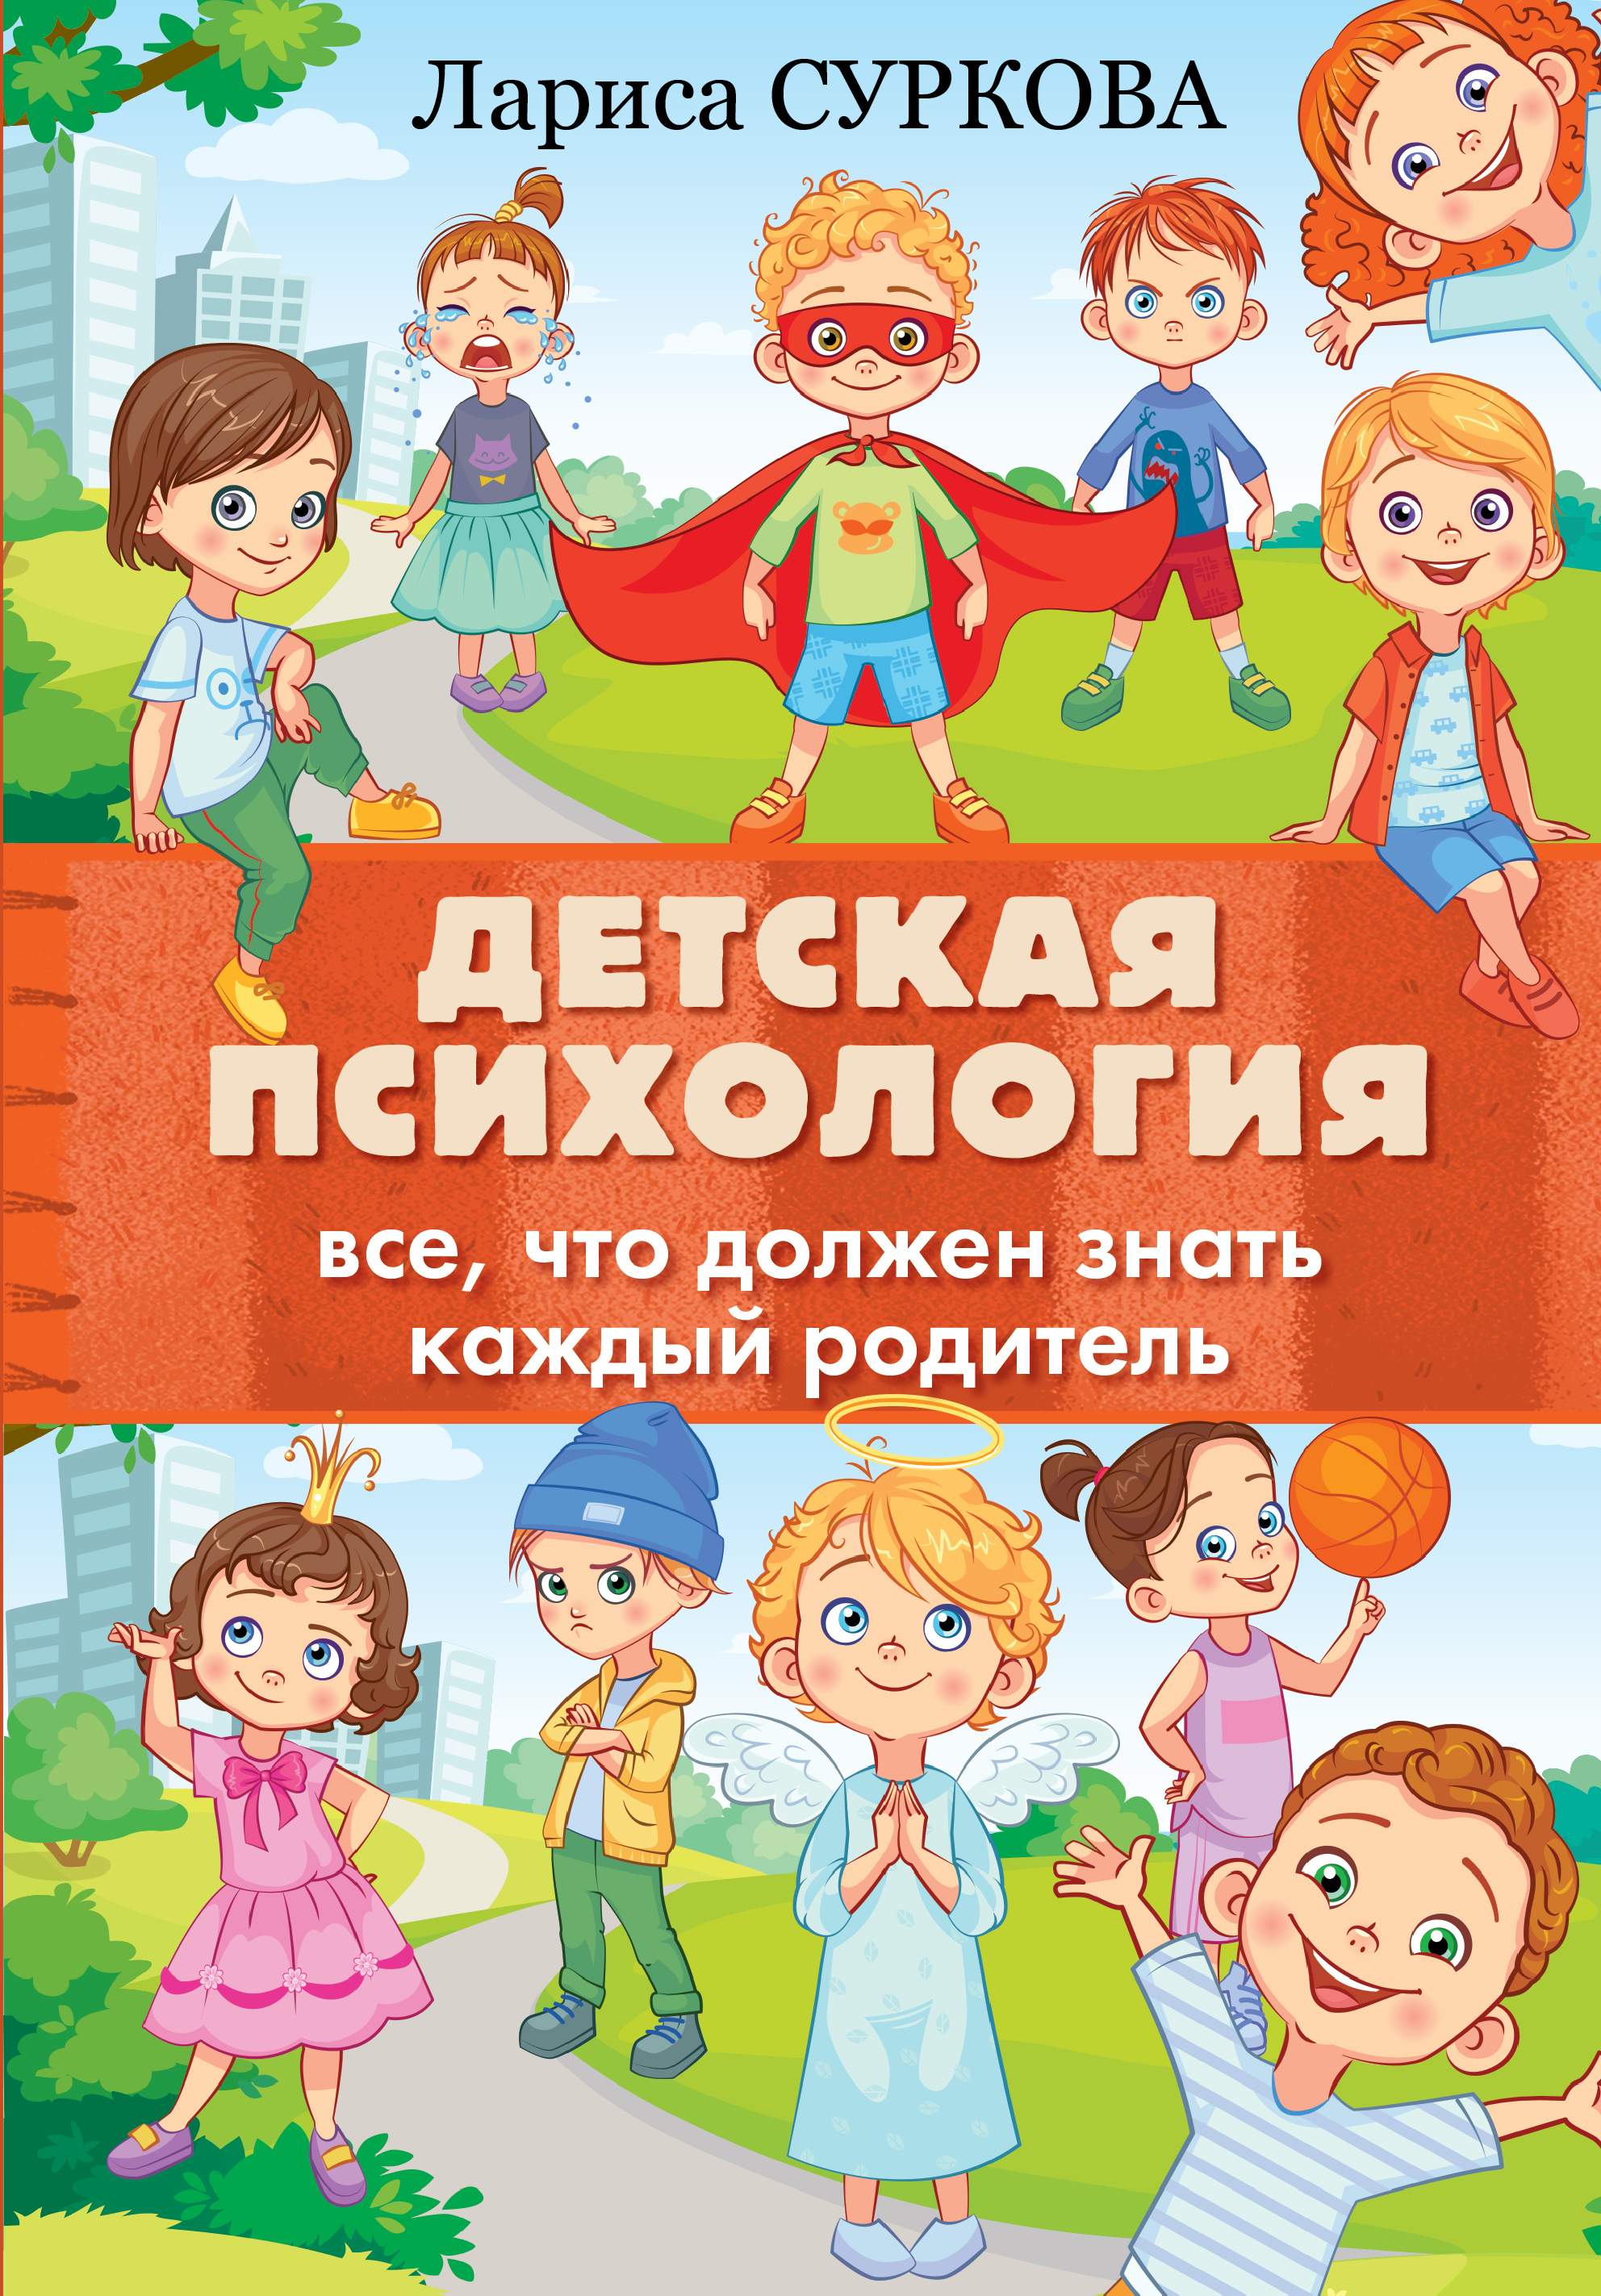 Суркова Лариса Михайловна Детская психология: все, что должен знать каждый родитель - страница 0